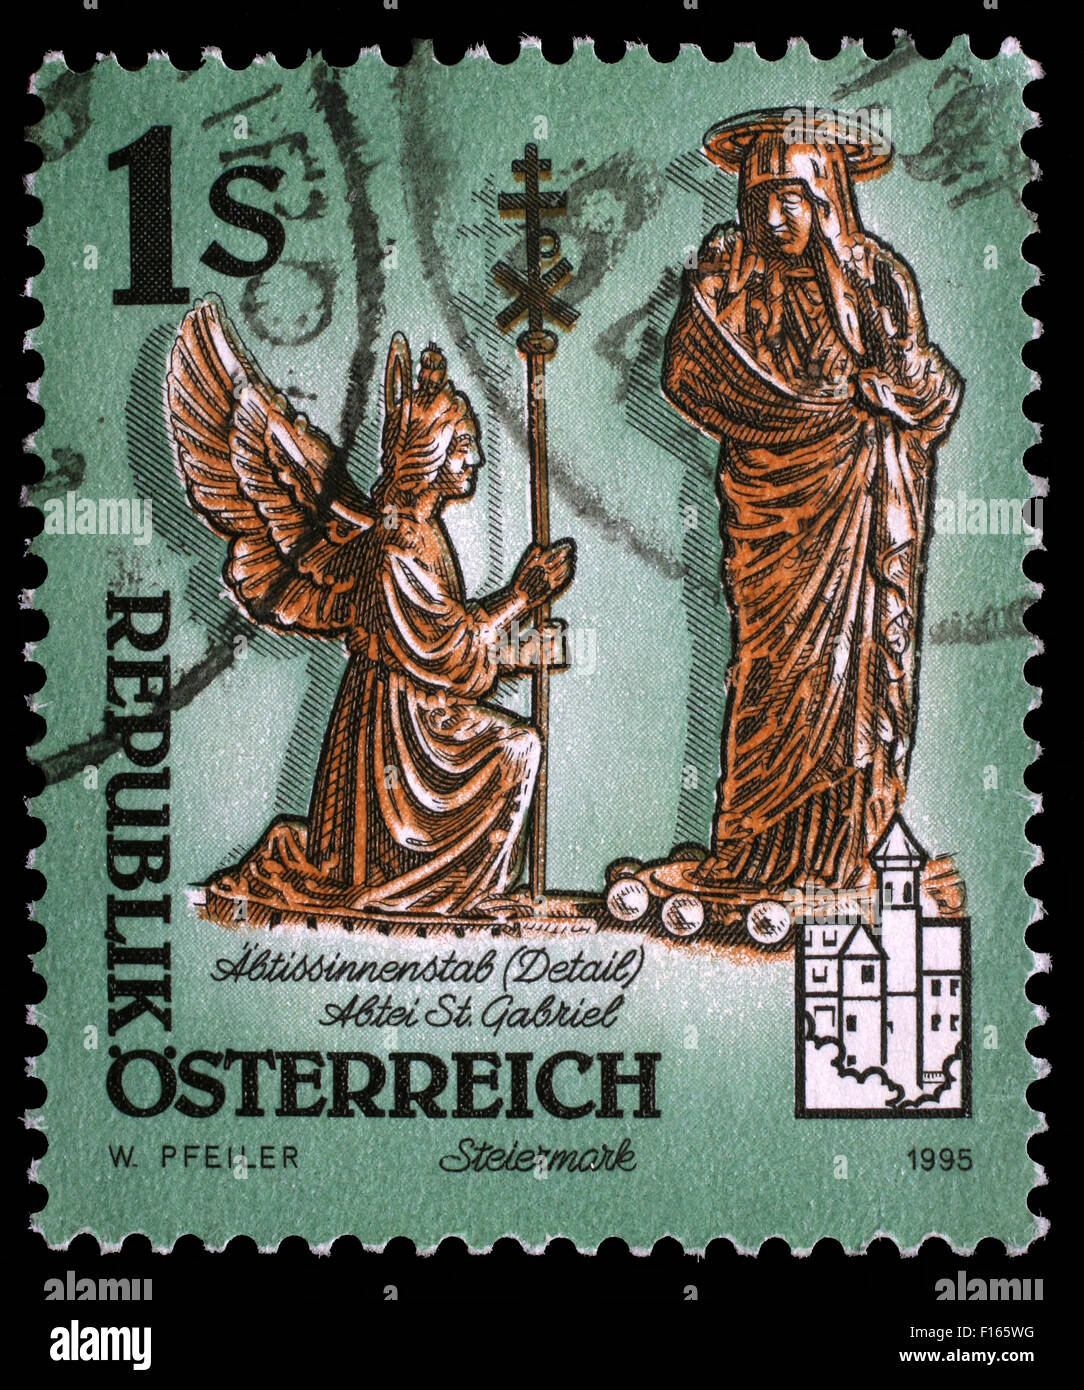 Briefmarke gedruckt durch Österreich, zeigt Figuren von Erzengel Gabriel und Jungfrau Maria, Mariä Verkündigung, Kloster Admont, ca. 1995 Stockfoto